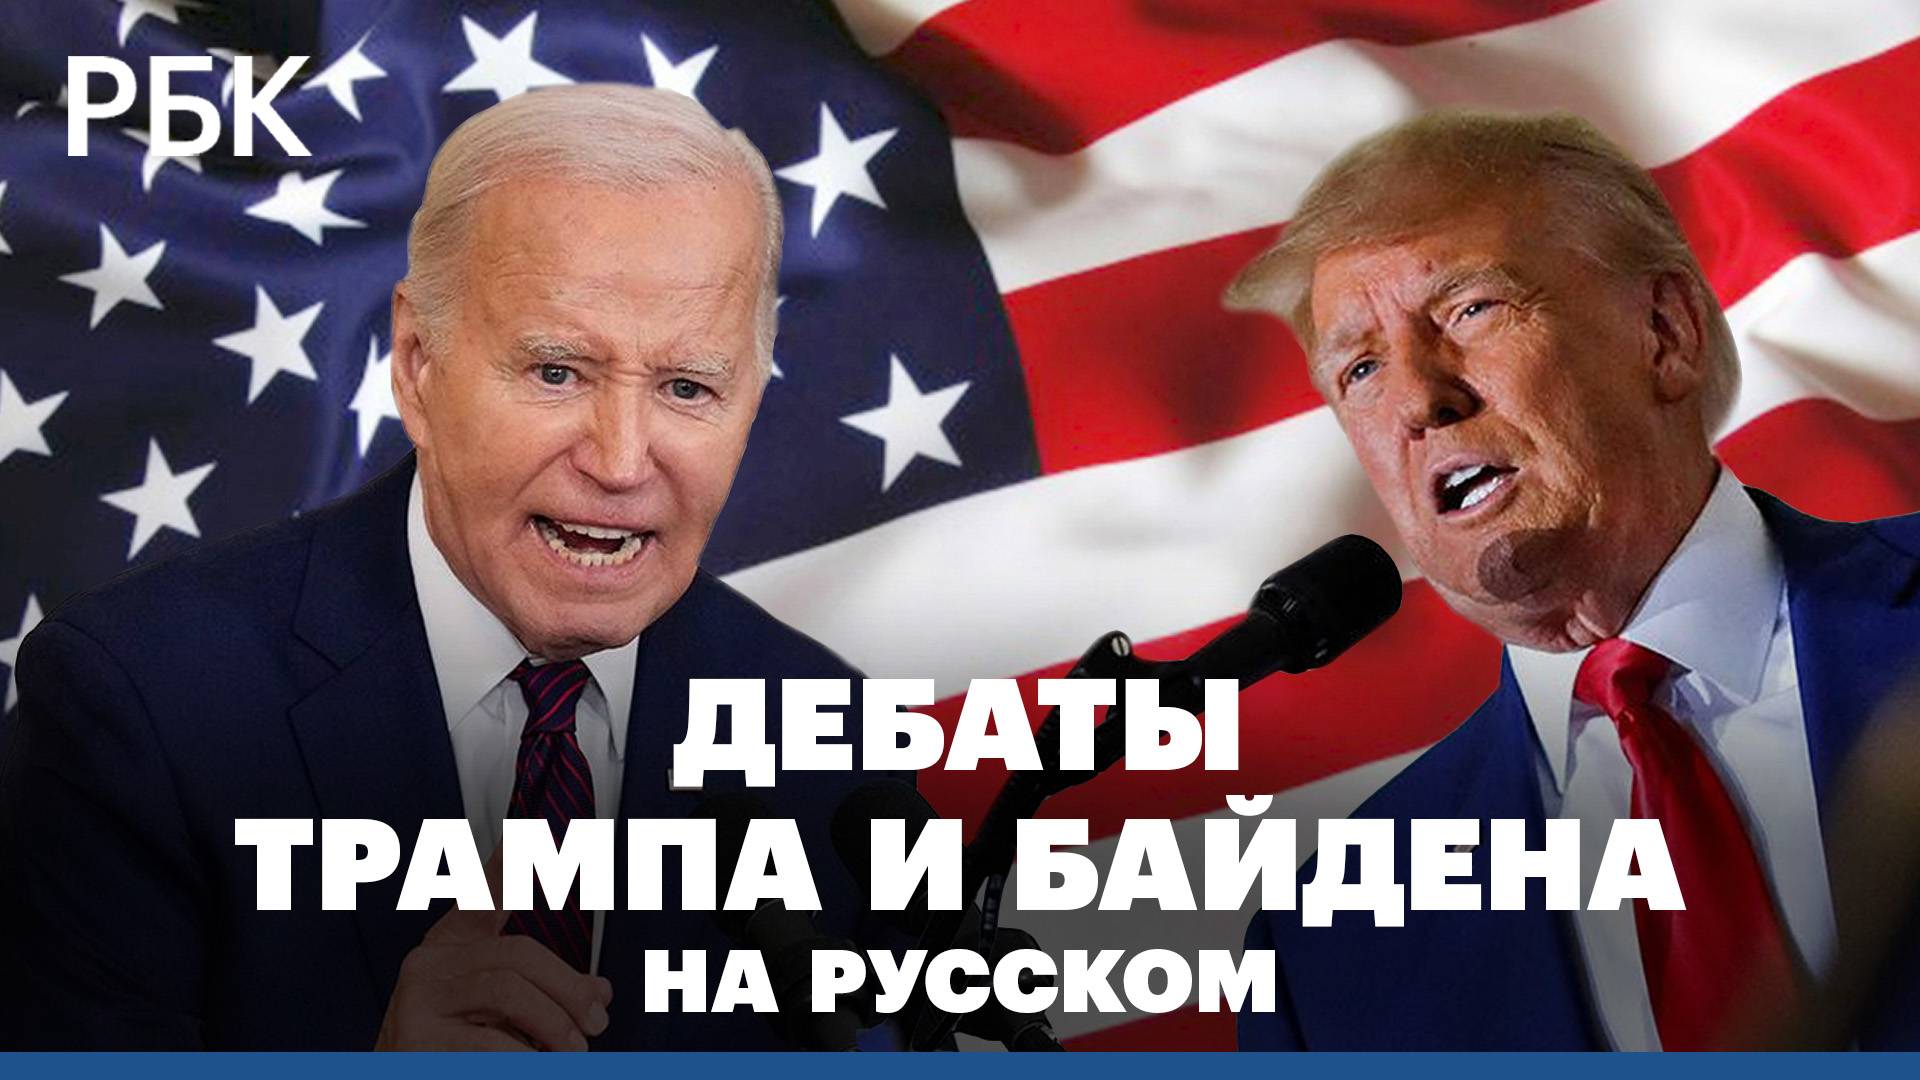 Дебаты Байдена и Трампа: полная версия на русском языке